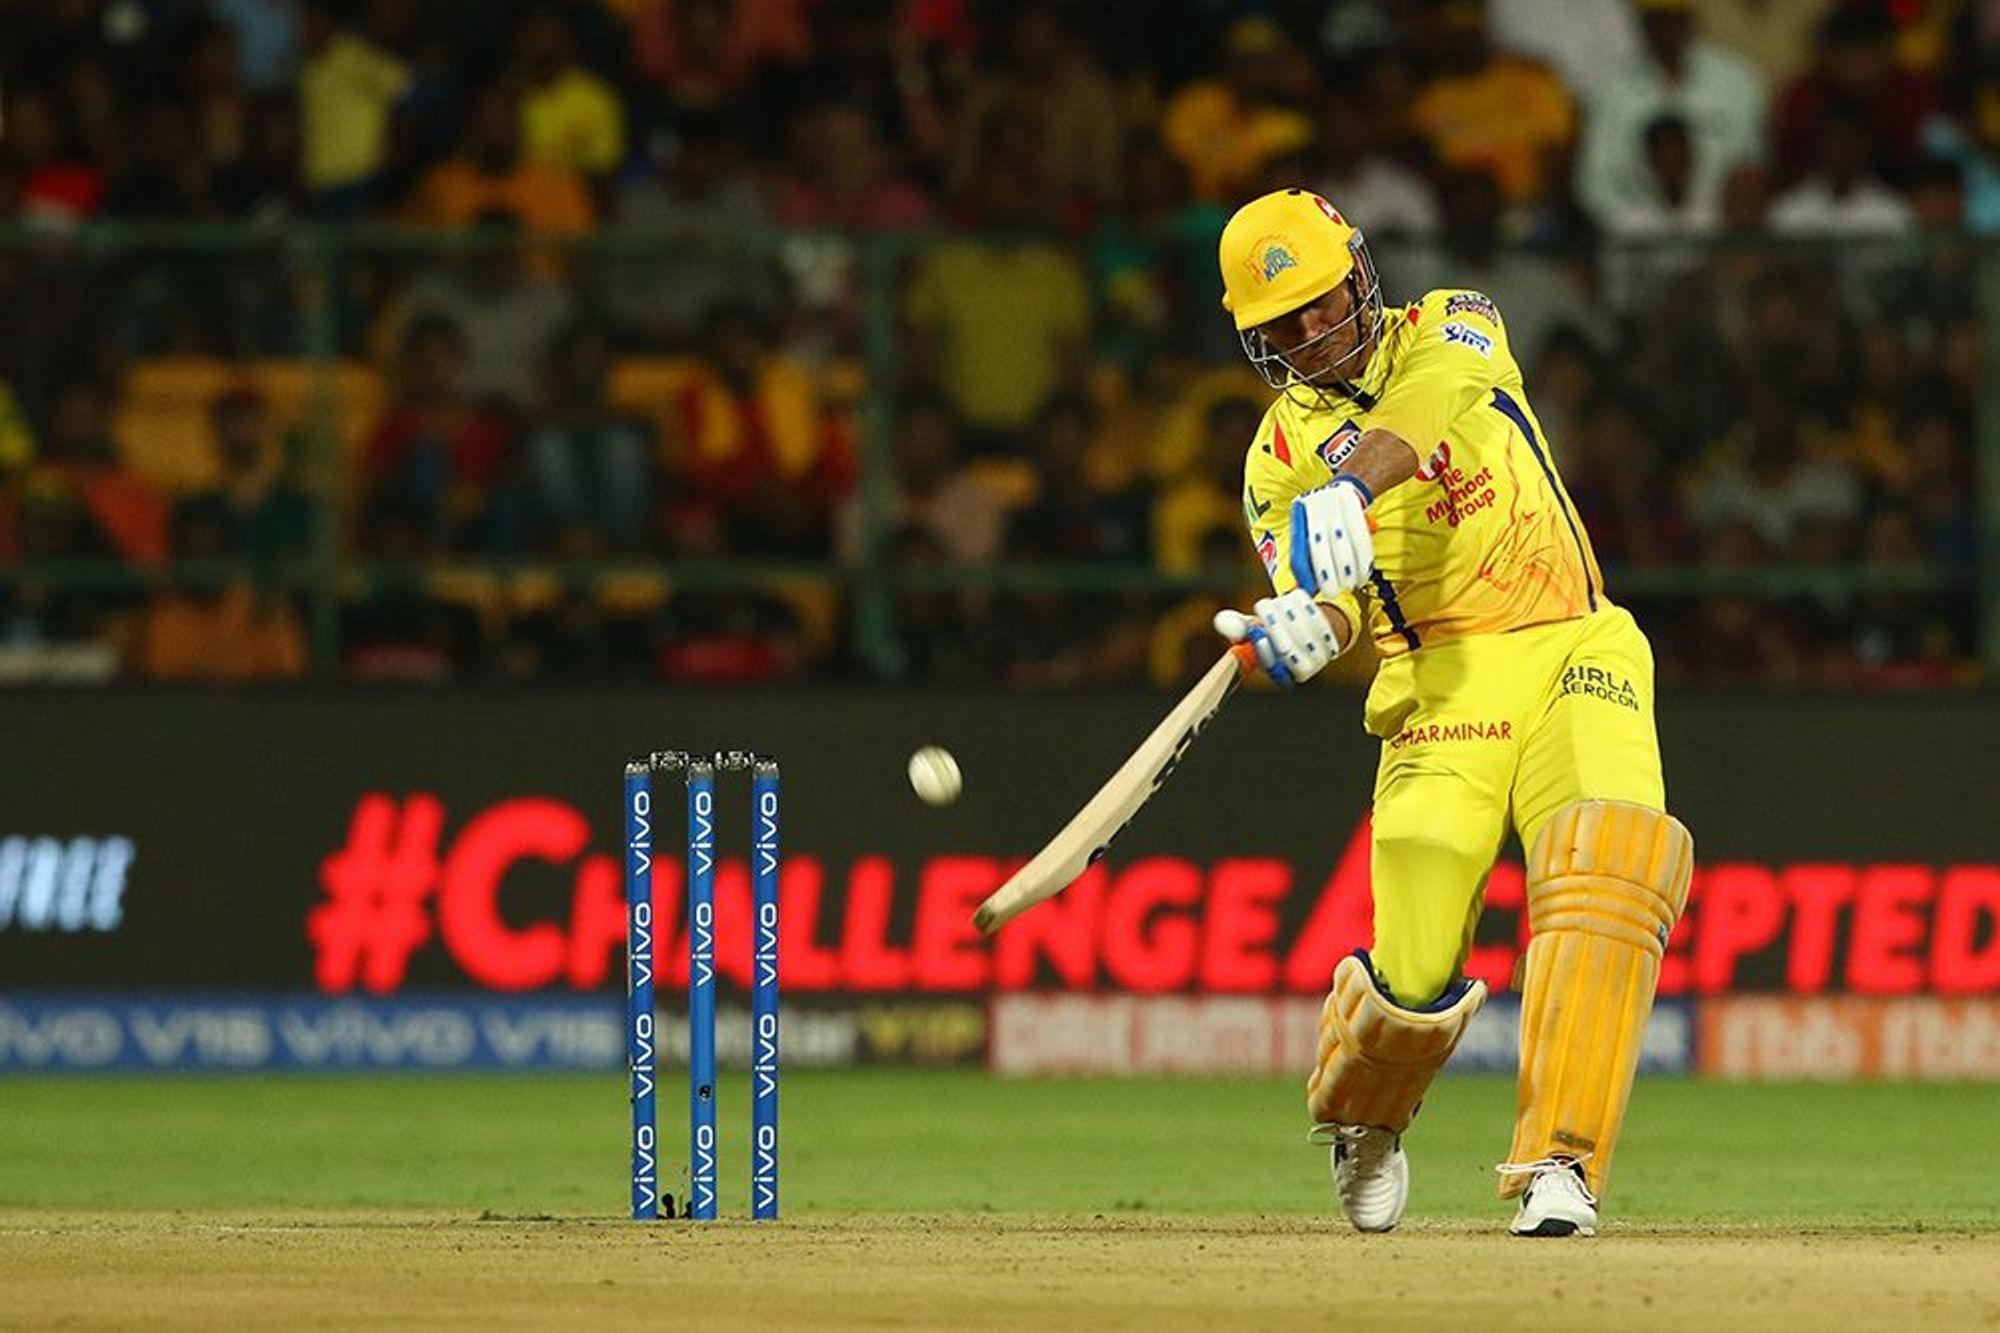 आईपीएल 2019: महेंद्र सिंह धोनी ने अंतिम ओवर में 24 रन बनाकर रोहित शर्मा को छोड़ा पीछे 5